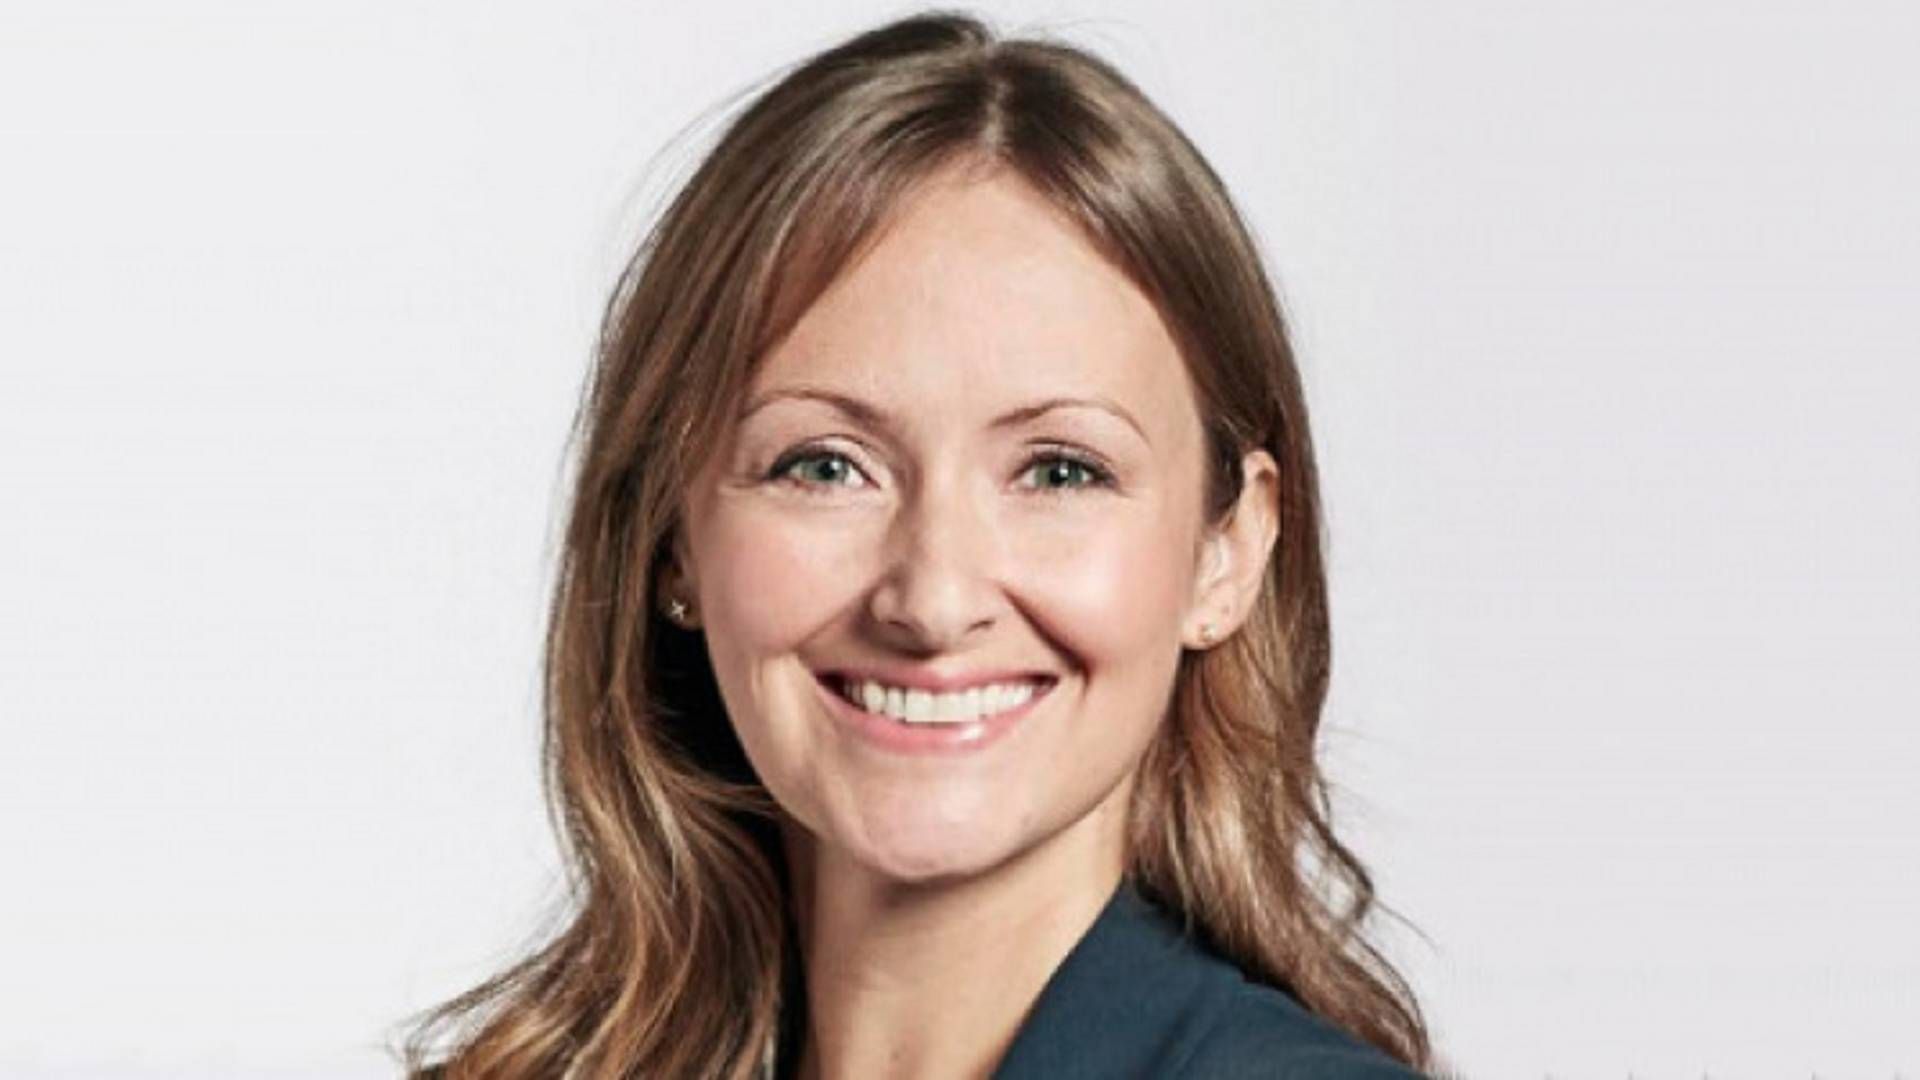 Adm. direktør Camilla Dalum har skudt penge i Roof Management og ejer nu halvdelen af det tidligere Gefion-selskab | Foto: Gefion/PR